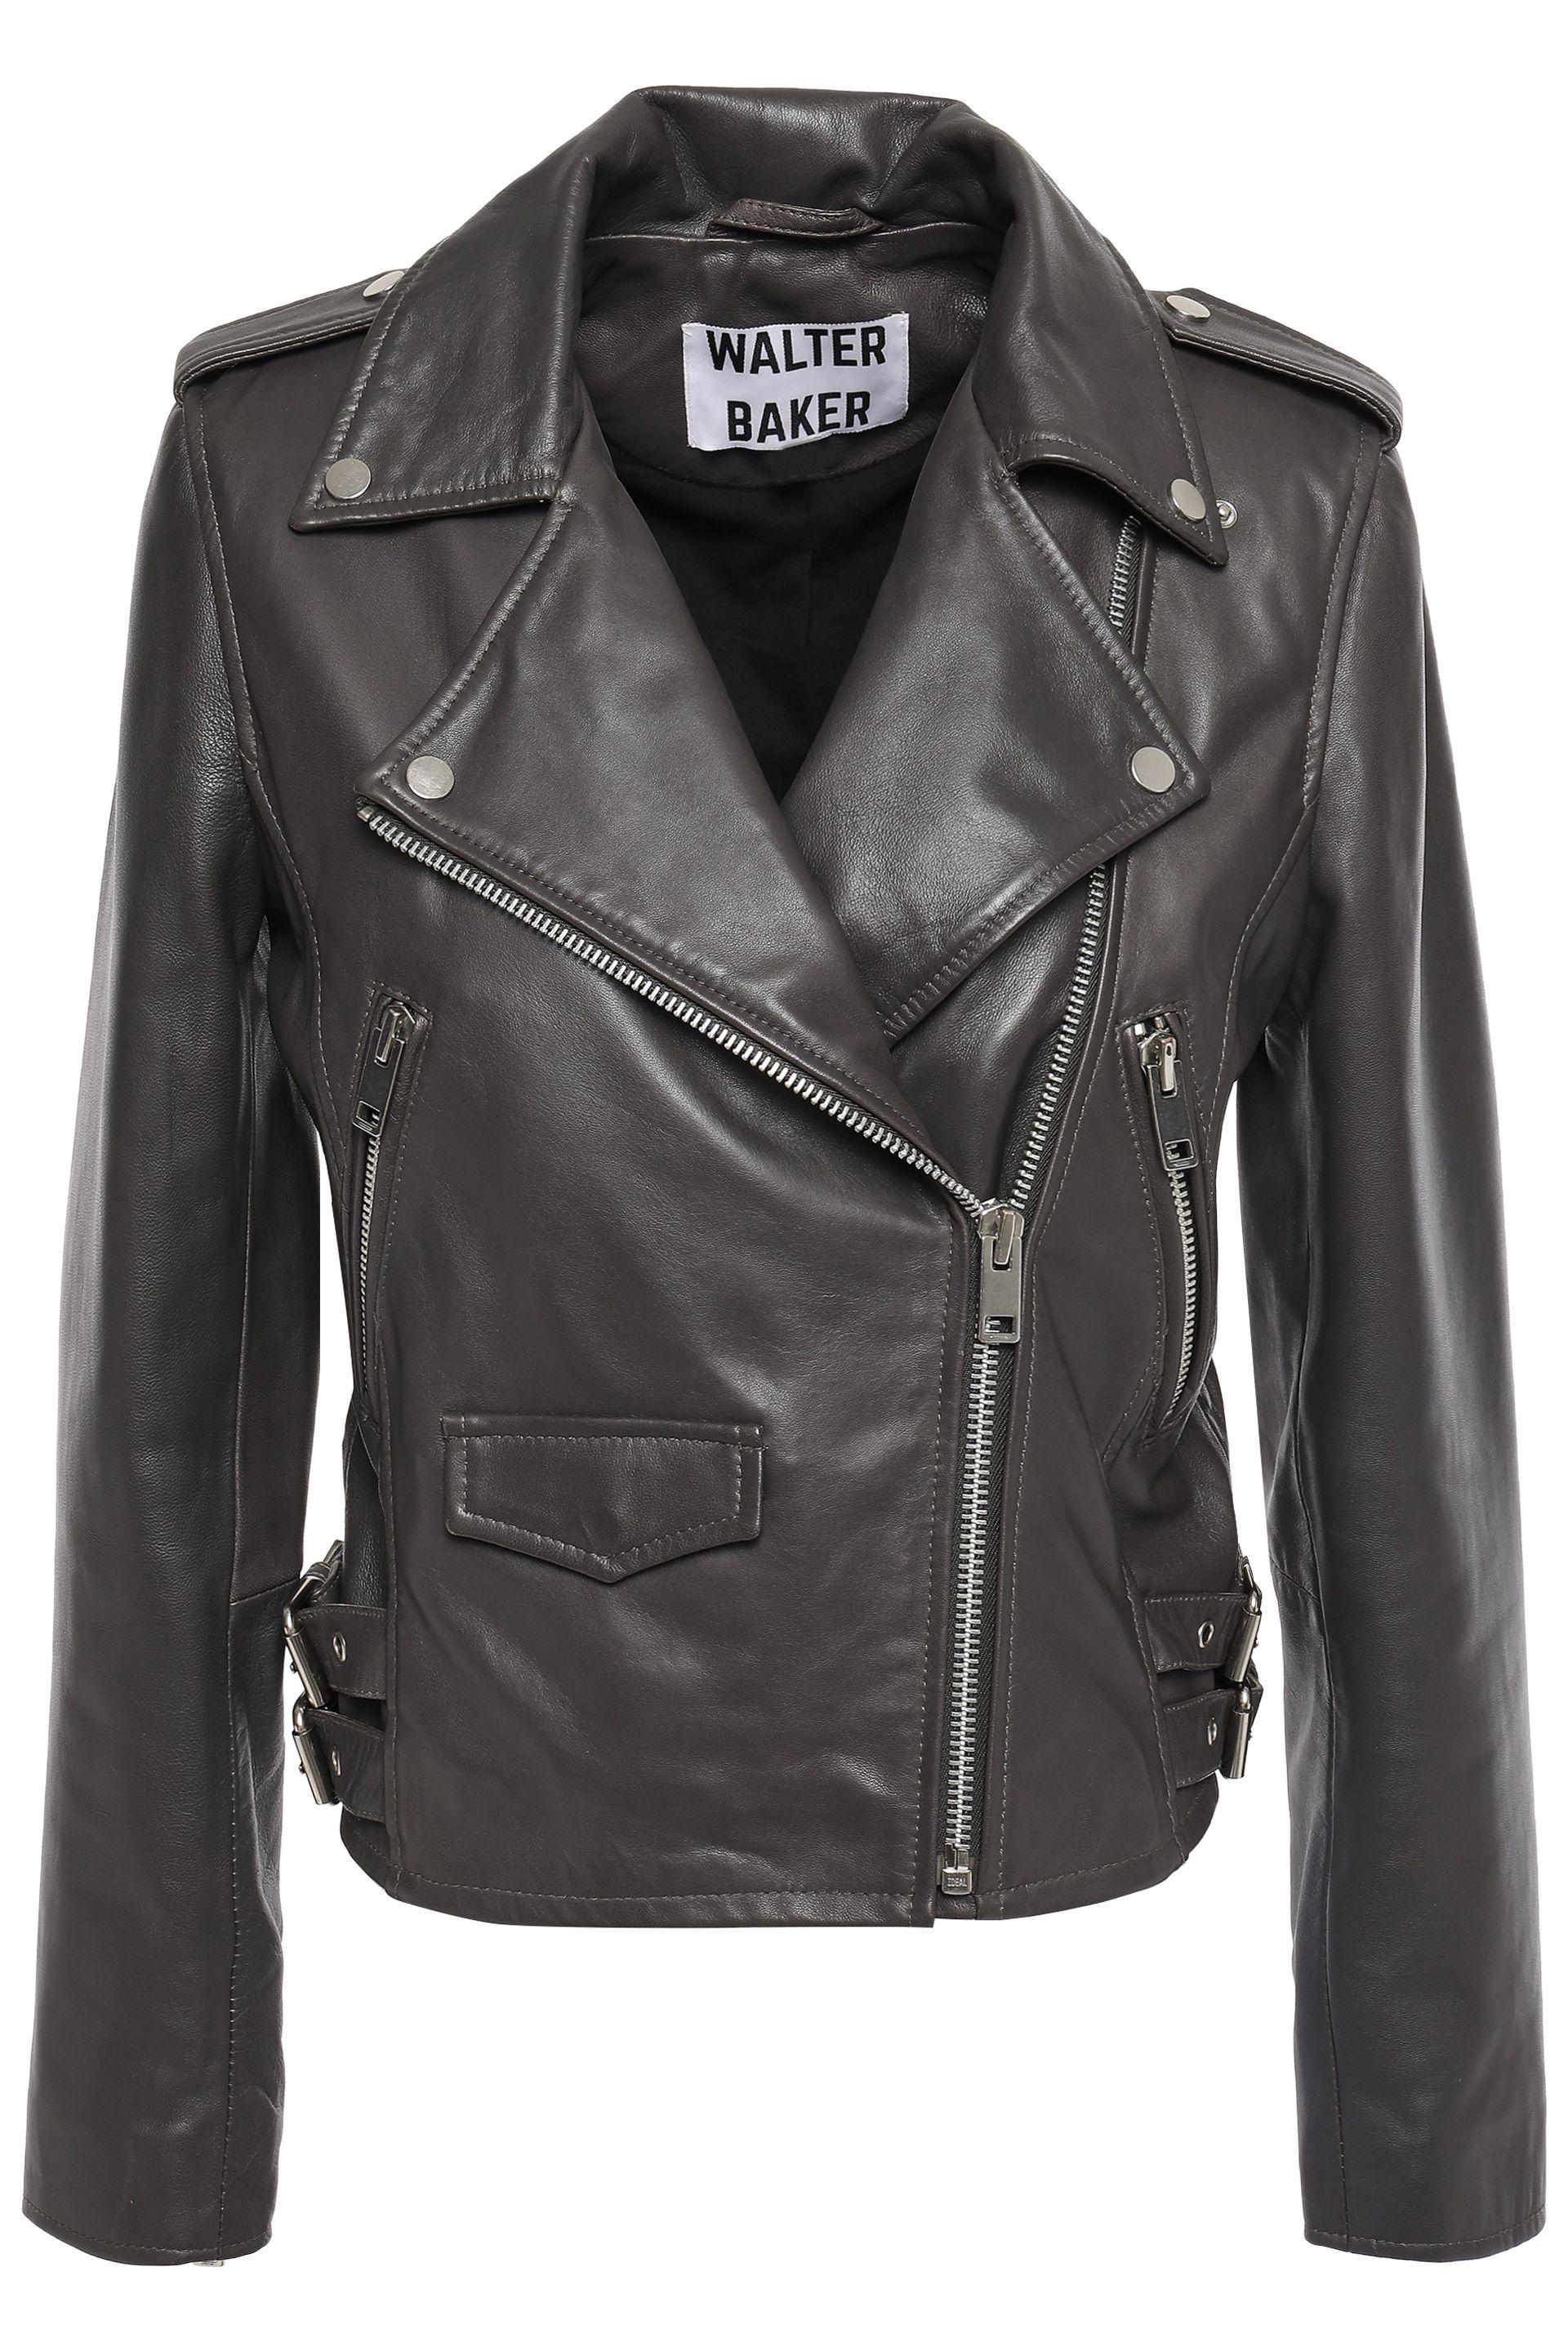 W118 by Walter Baker Leather Biker Jacket Dark Gray - Lyst